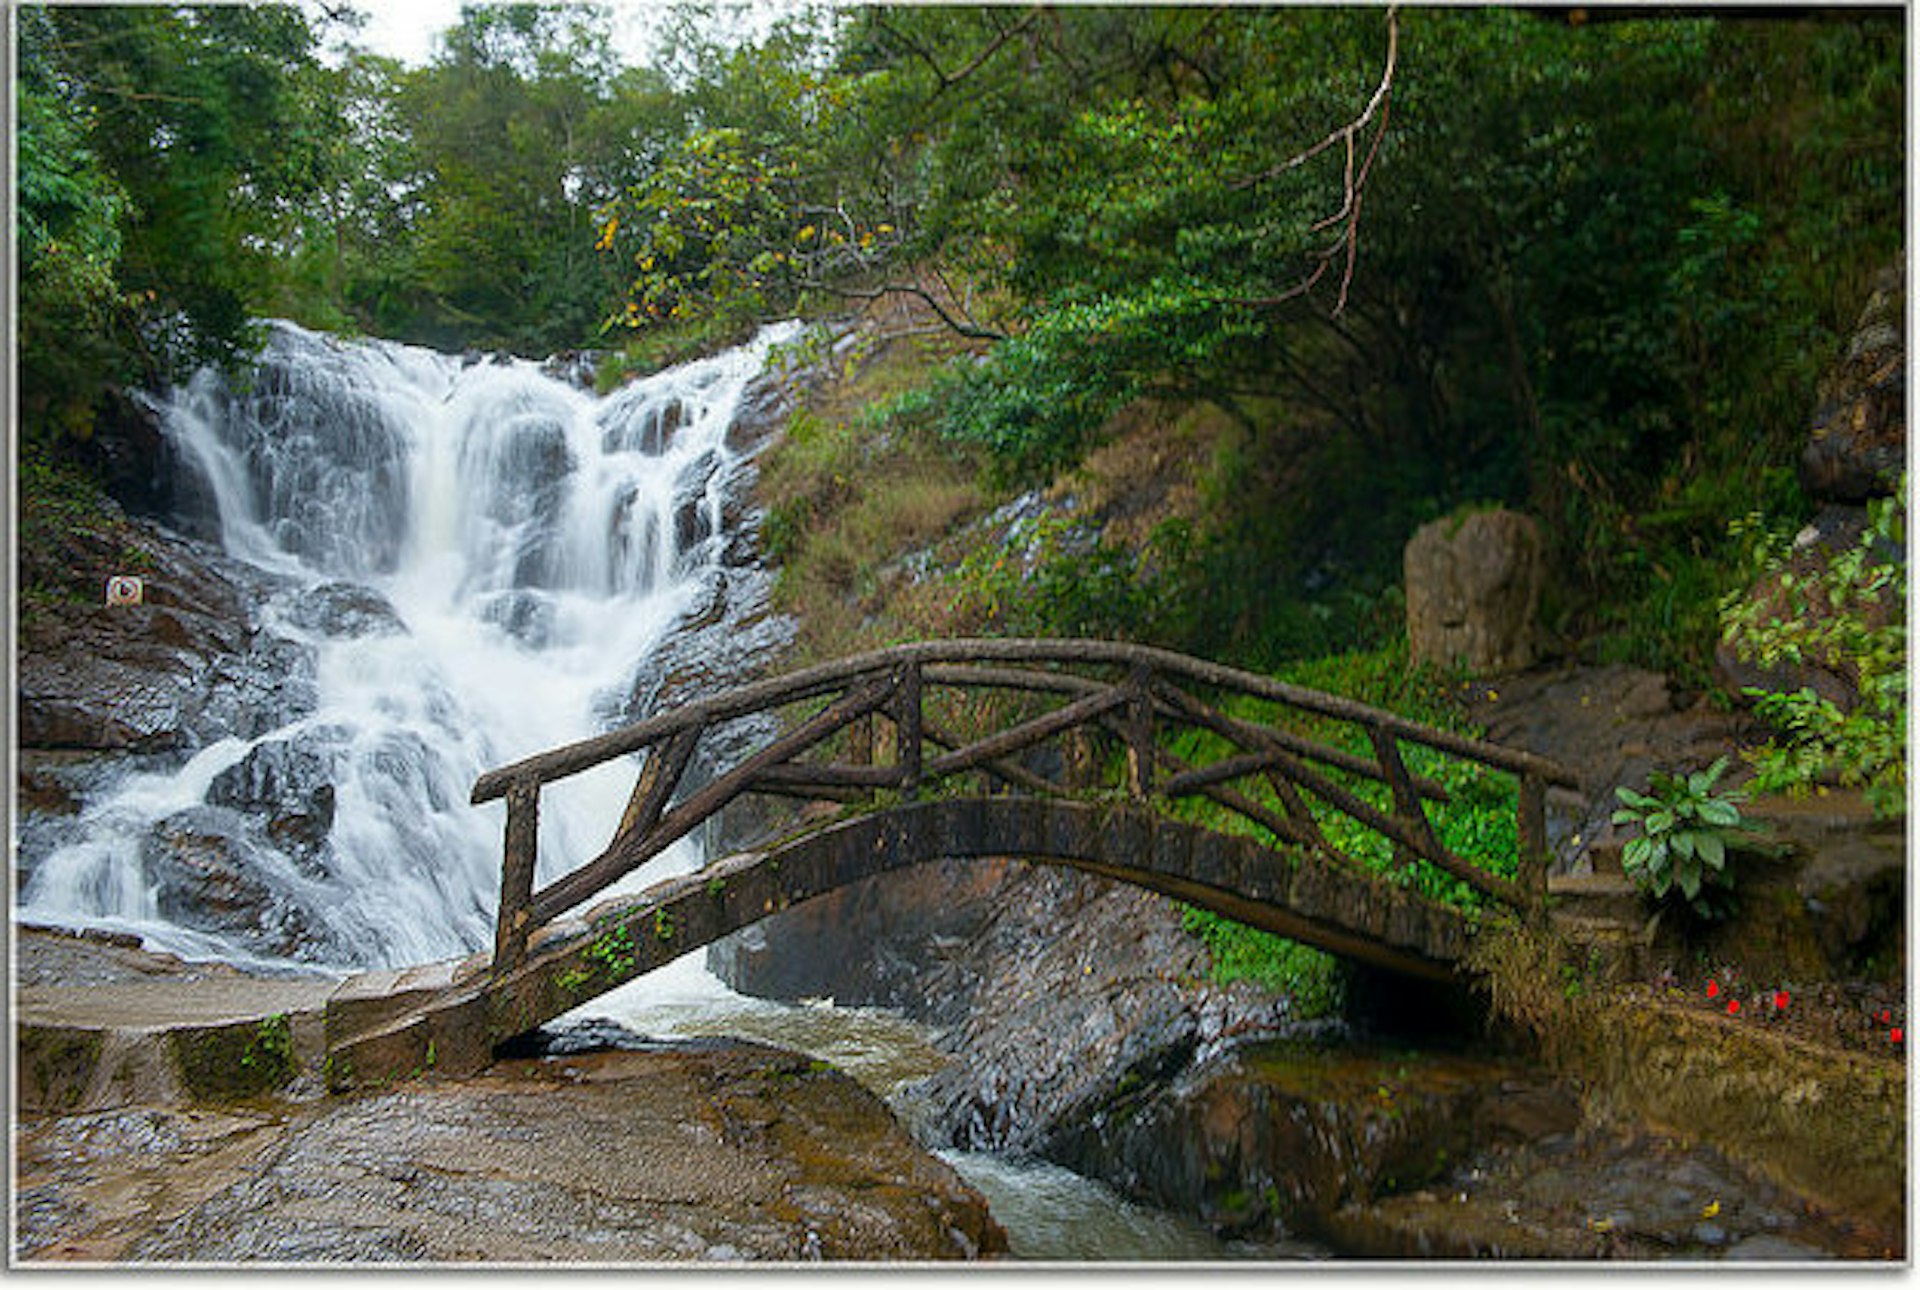 Datanla waterfall Vietnam.